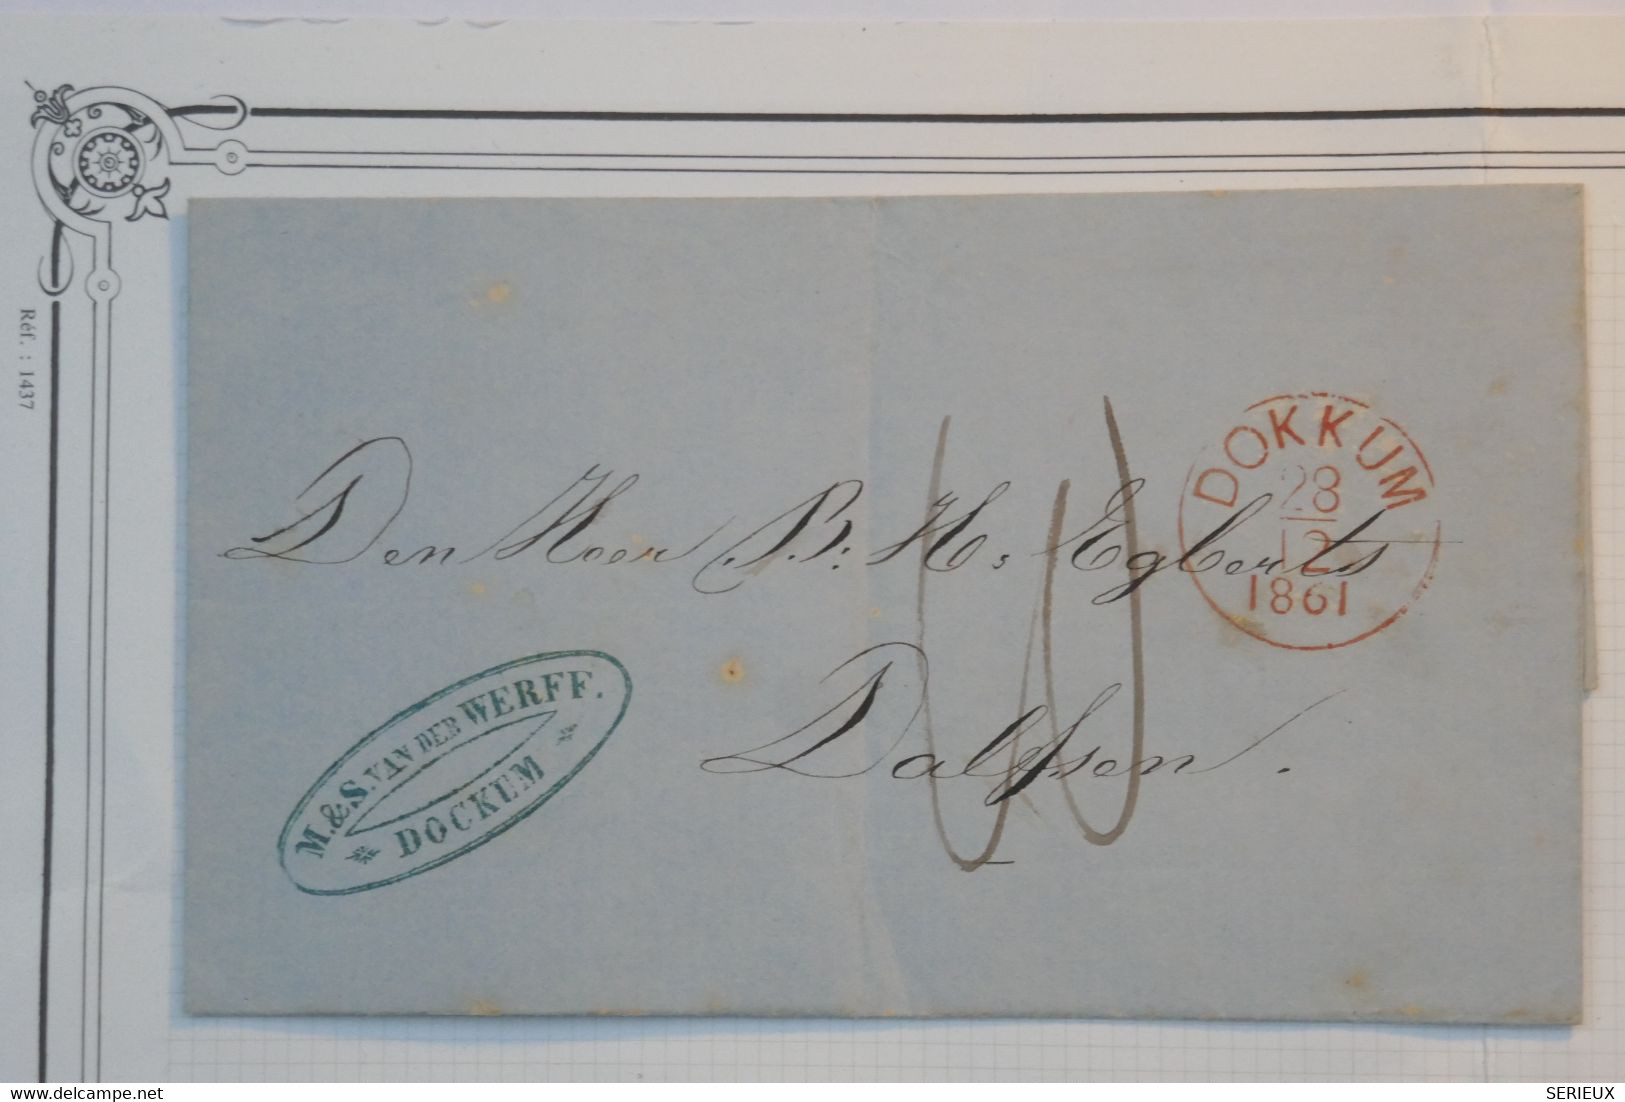 BE11  NEDERLAND  BELLE LETTRE  1861  PETIT BUREAU DOKKHUM A DALSEN  HOLLAND  +++AFFR. INTERESSANT - Poststempel